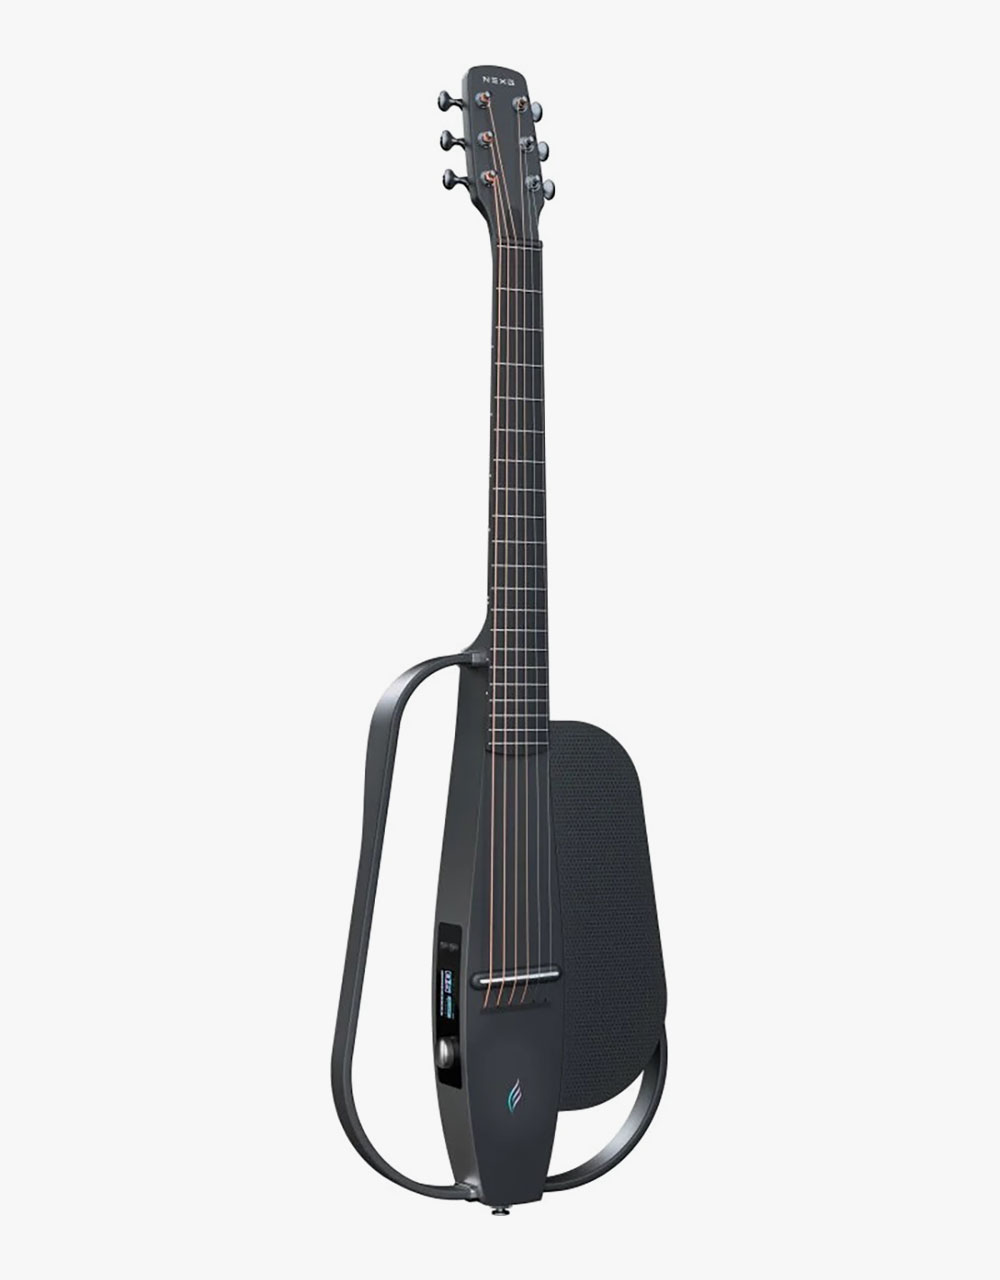 Трансакустическая гитара Enya NEXG 2/BK - купить в "Гитарном Клубе"